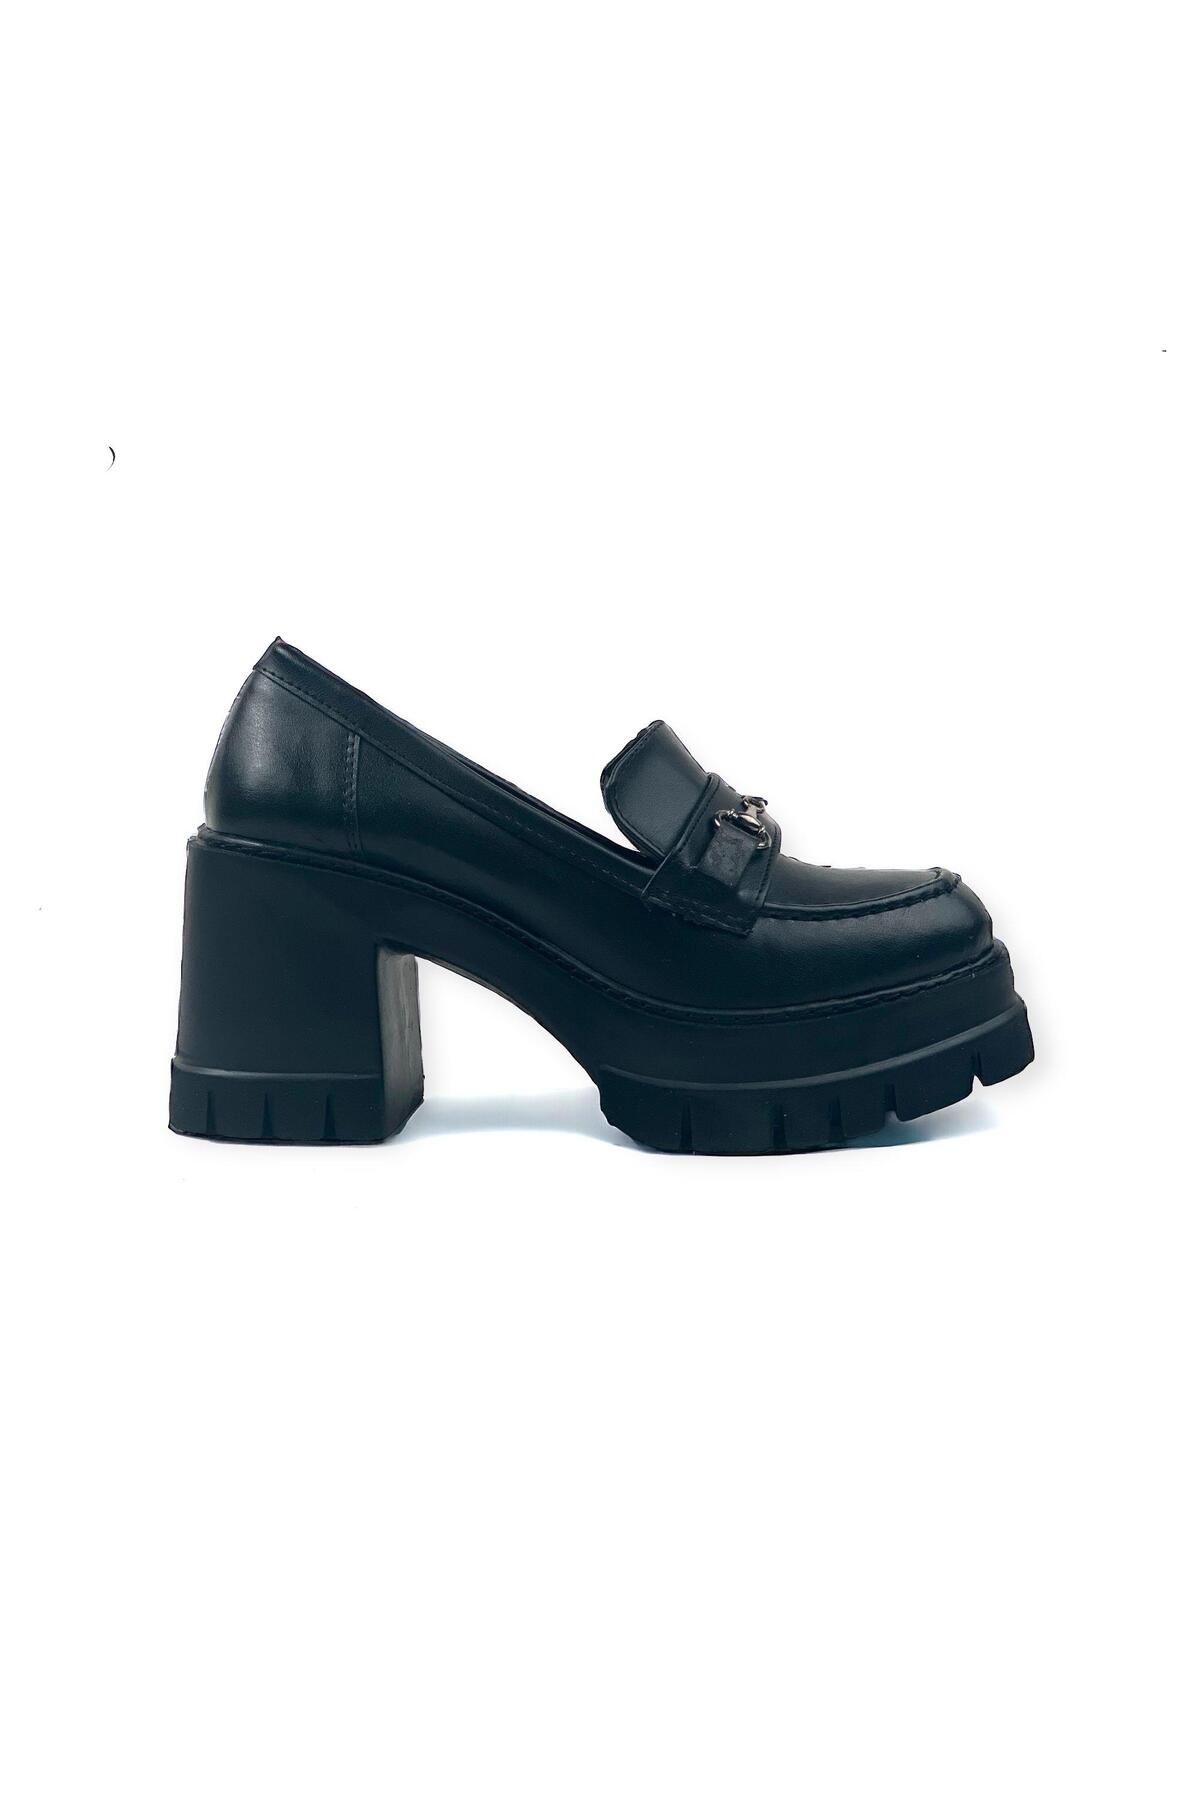 bescobel Kadın Ponsa Siyah Yüksek Topuklu Leofer Ayakkabı